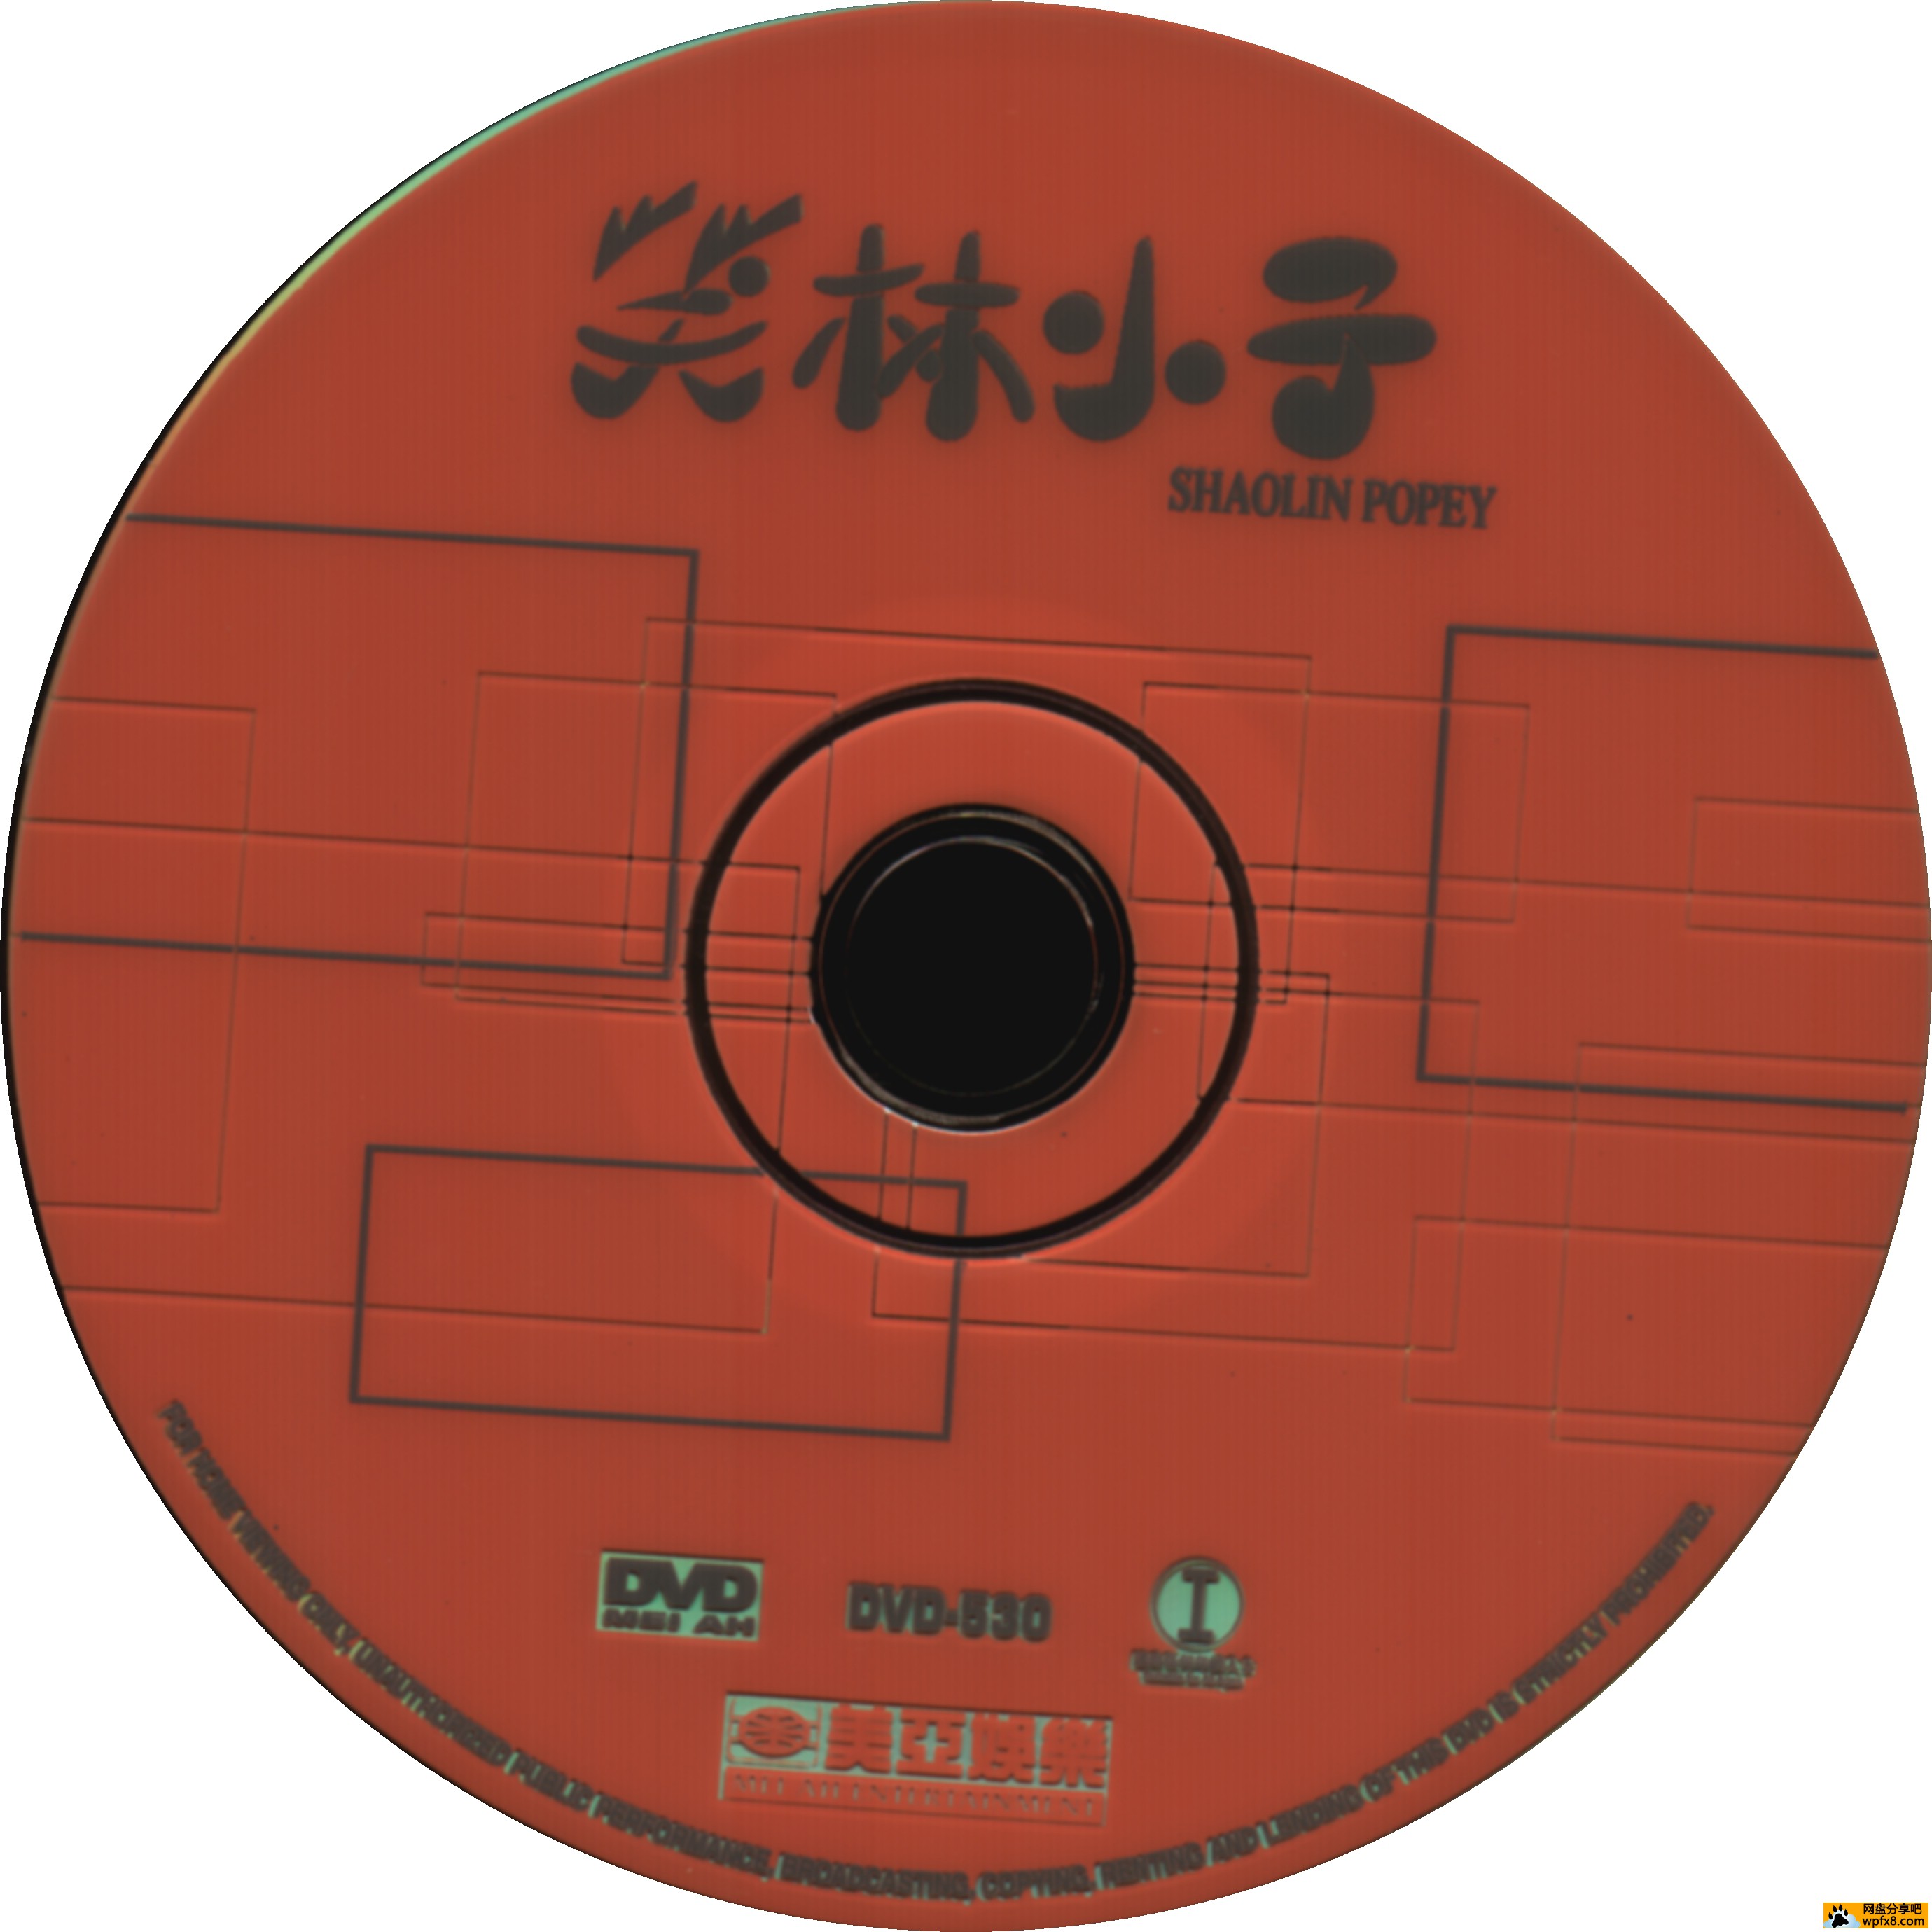 Shaolin Popey-Disk.jpg